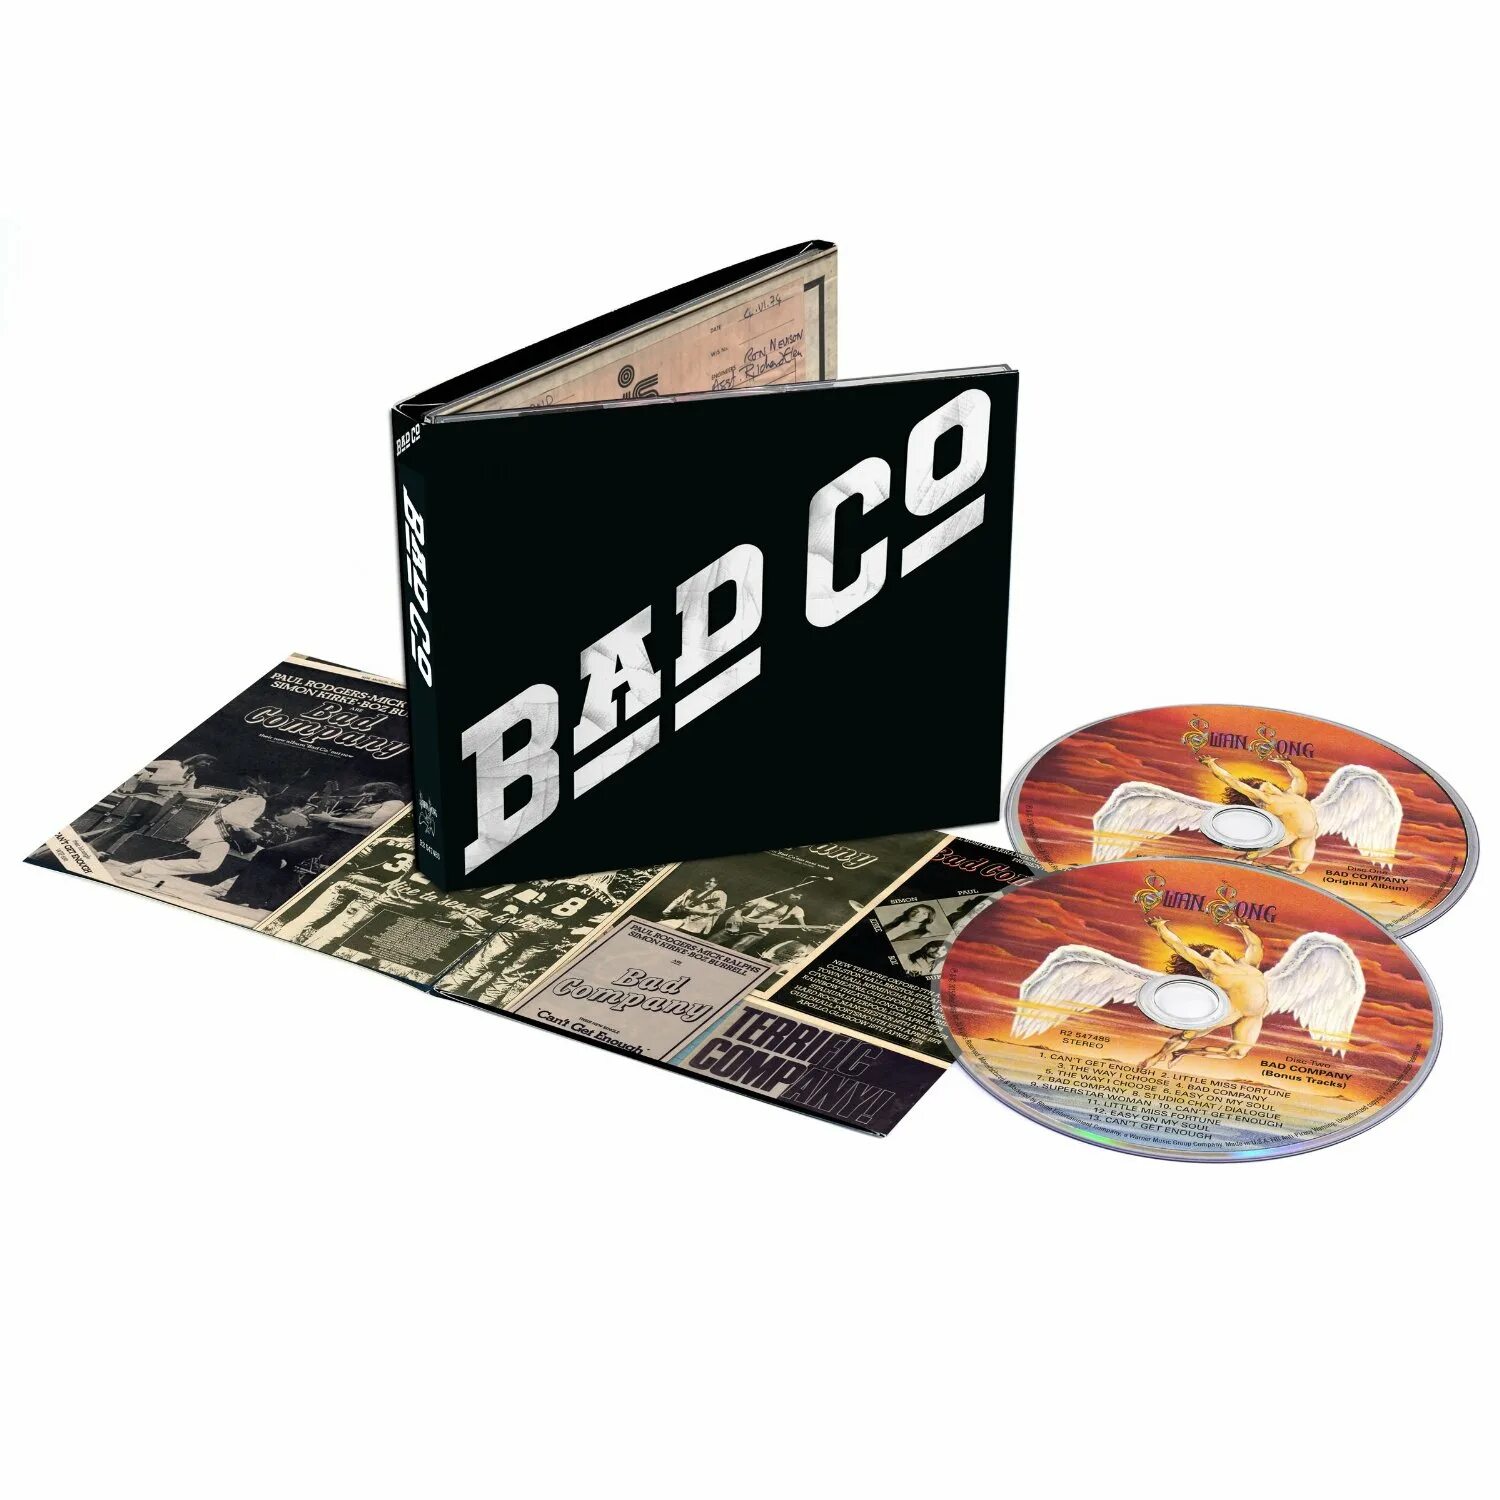 Cd2. Bad Company одежда. CD Bad Company: 10 from 6. Фото коллекция CD дисков Bad Company.